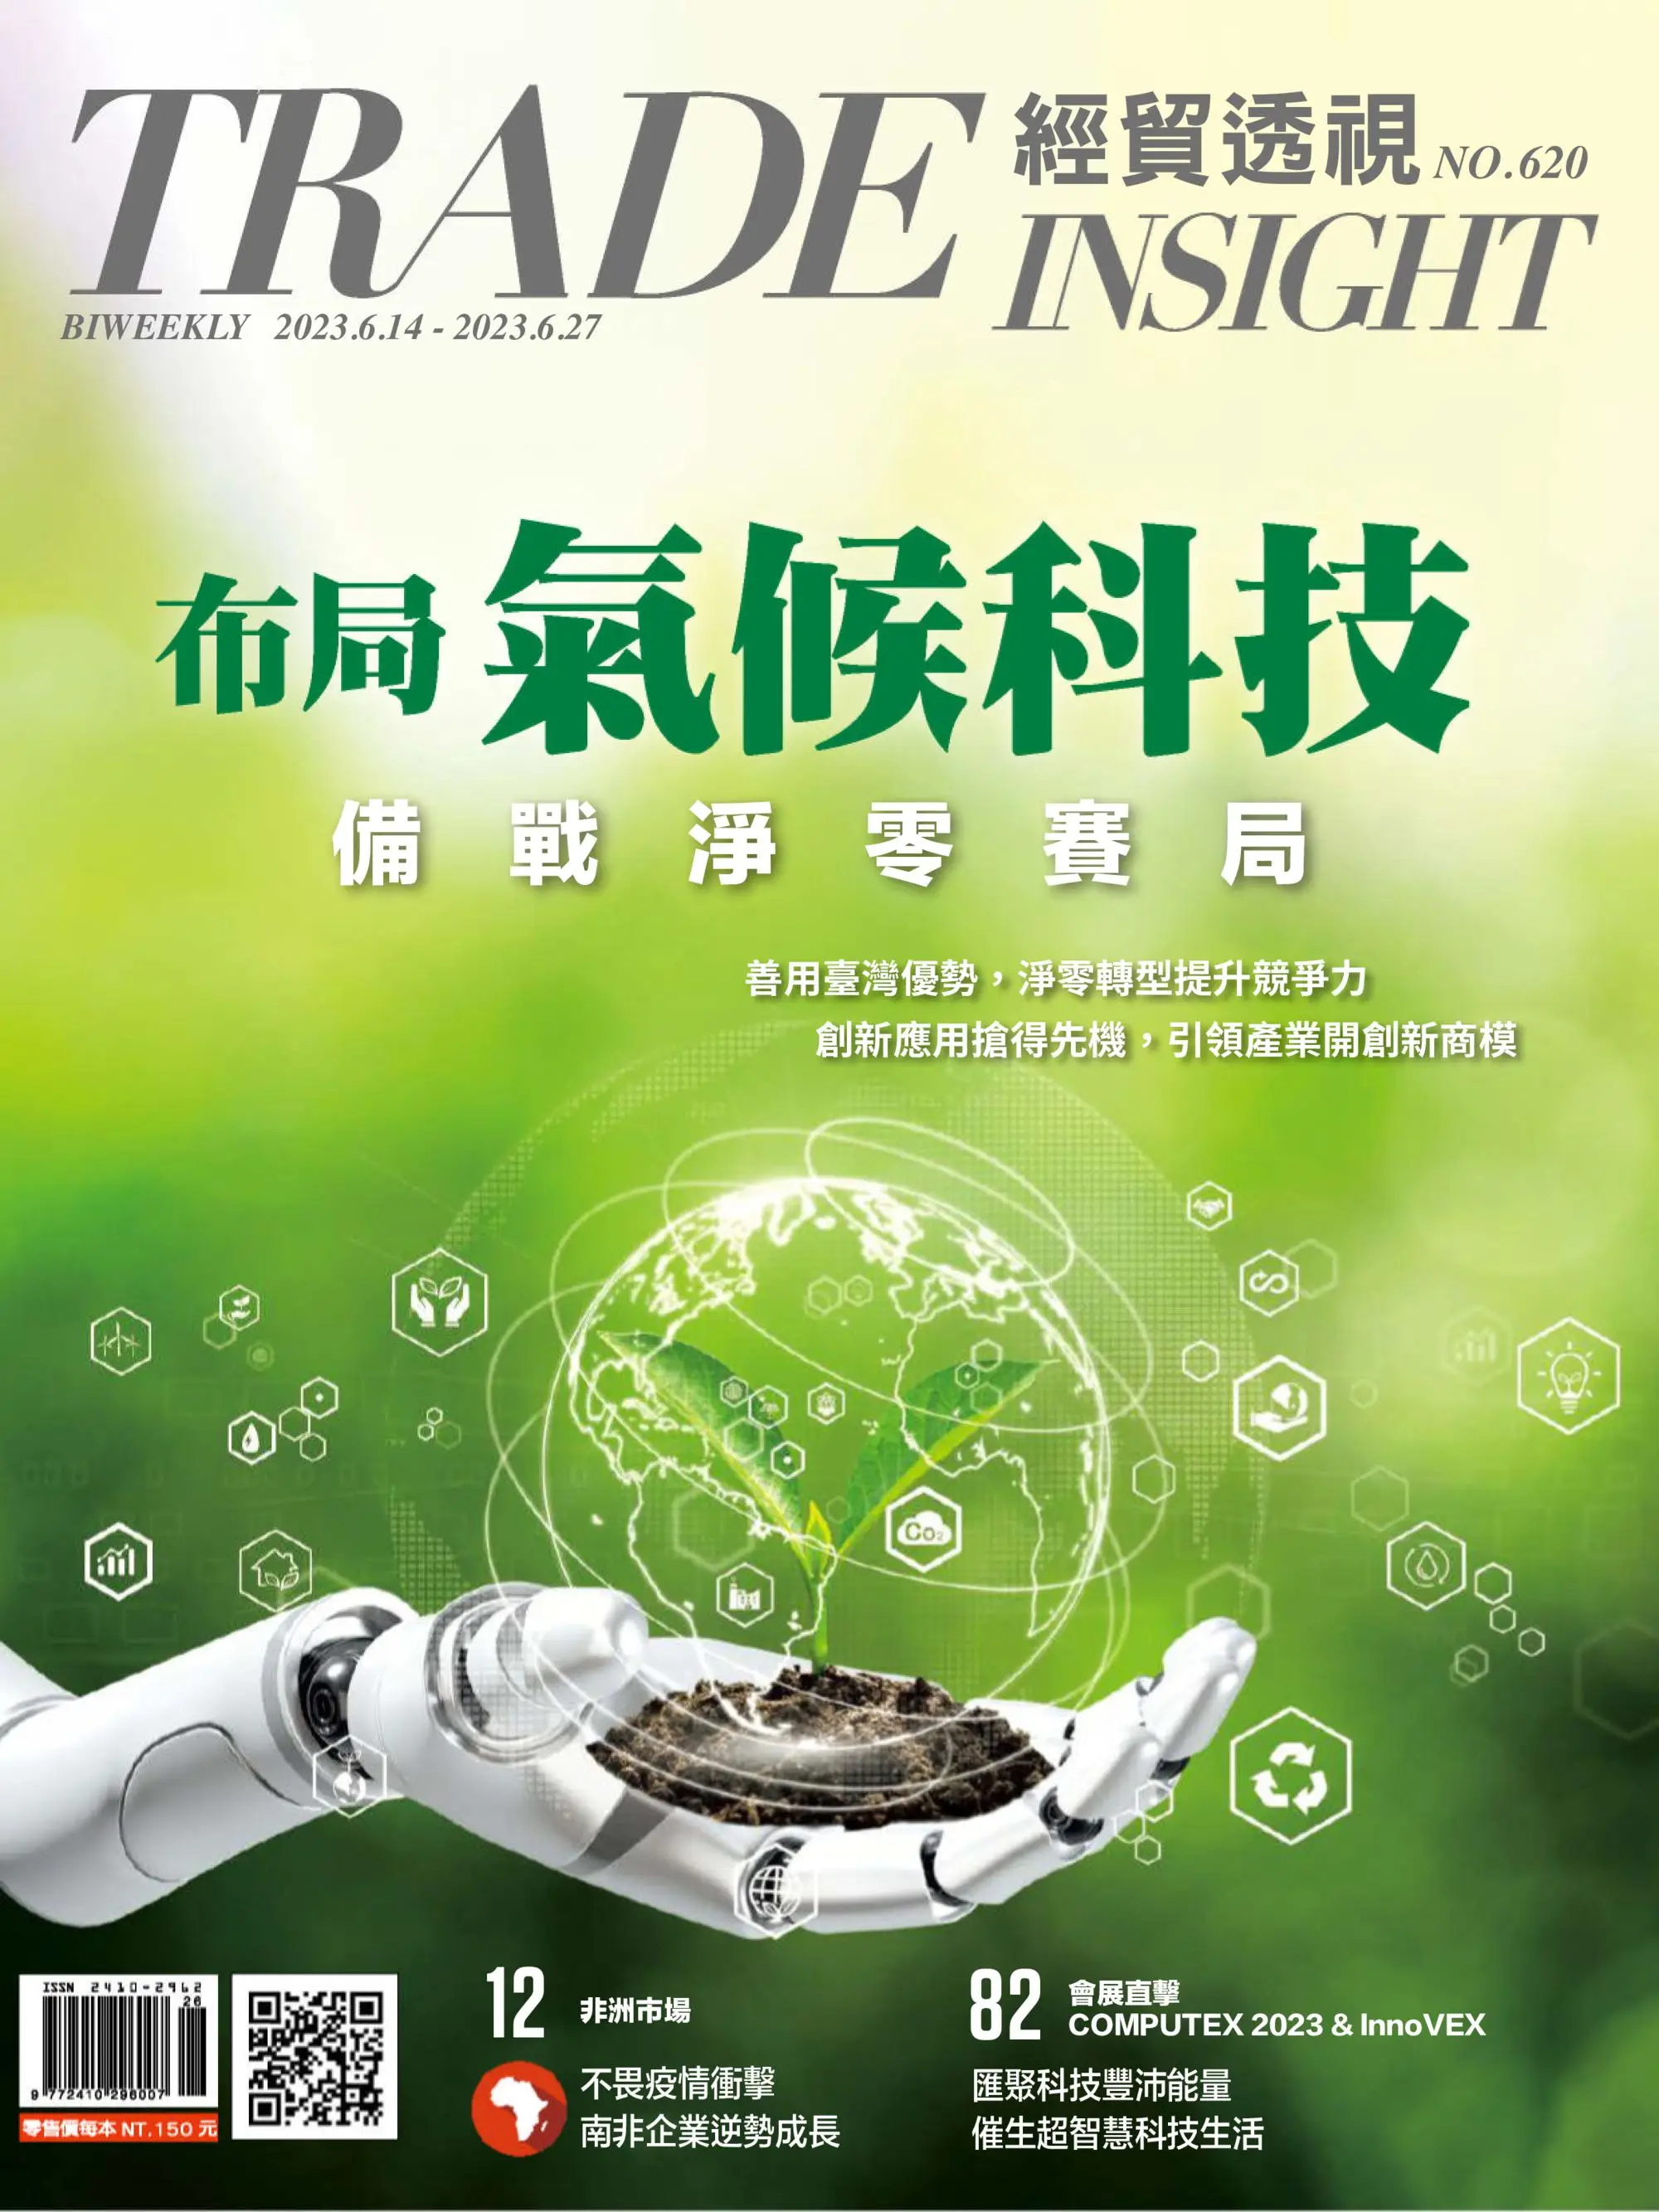 Trade Insight Biweekly 經貿透視雙周刊 2023年六月 14, 